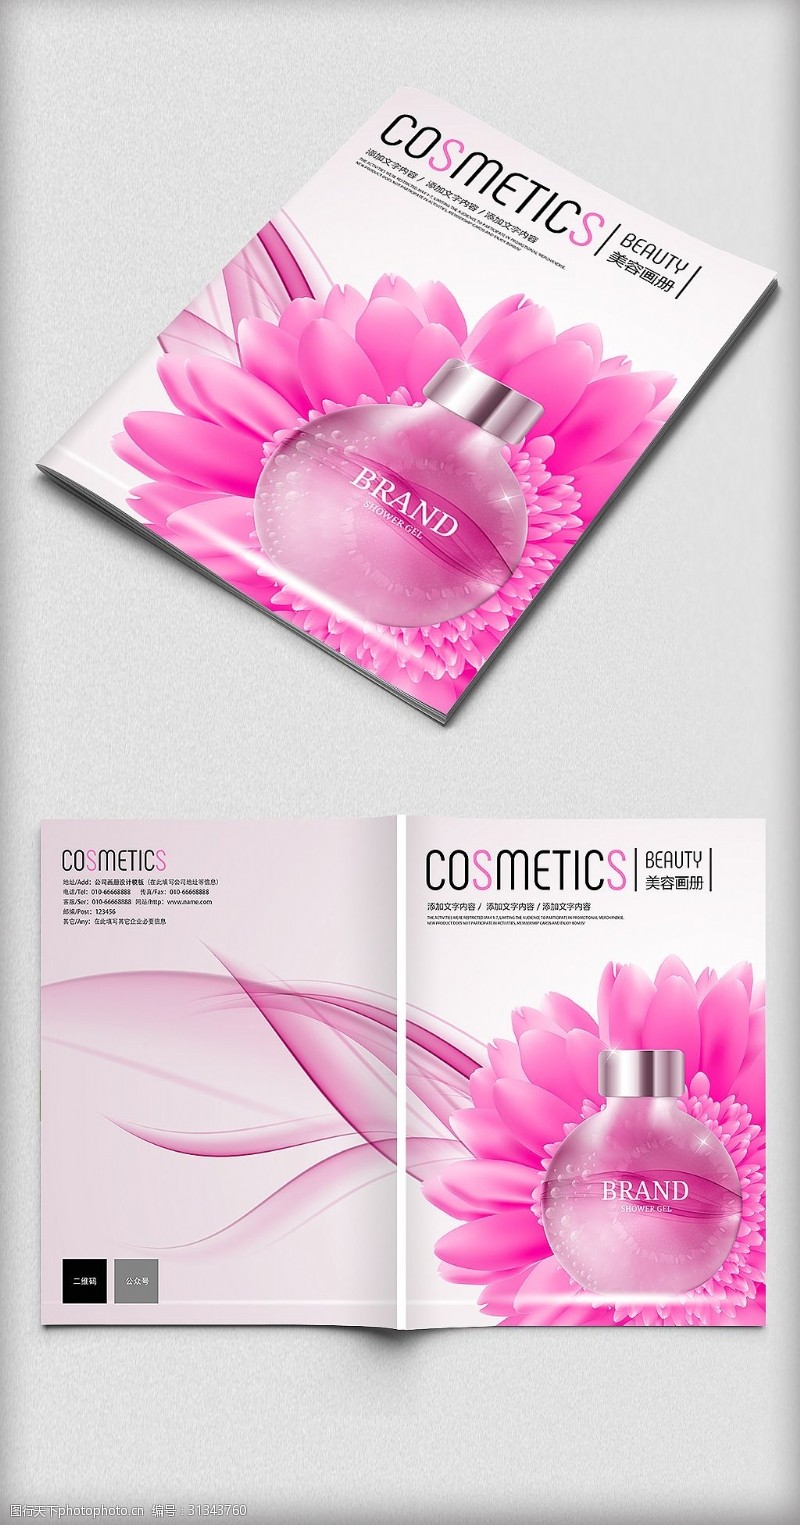 粉色画册底图粉色美容化妆品像素画册封面设计